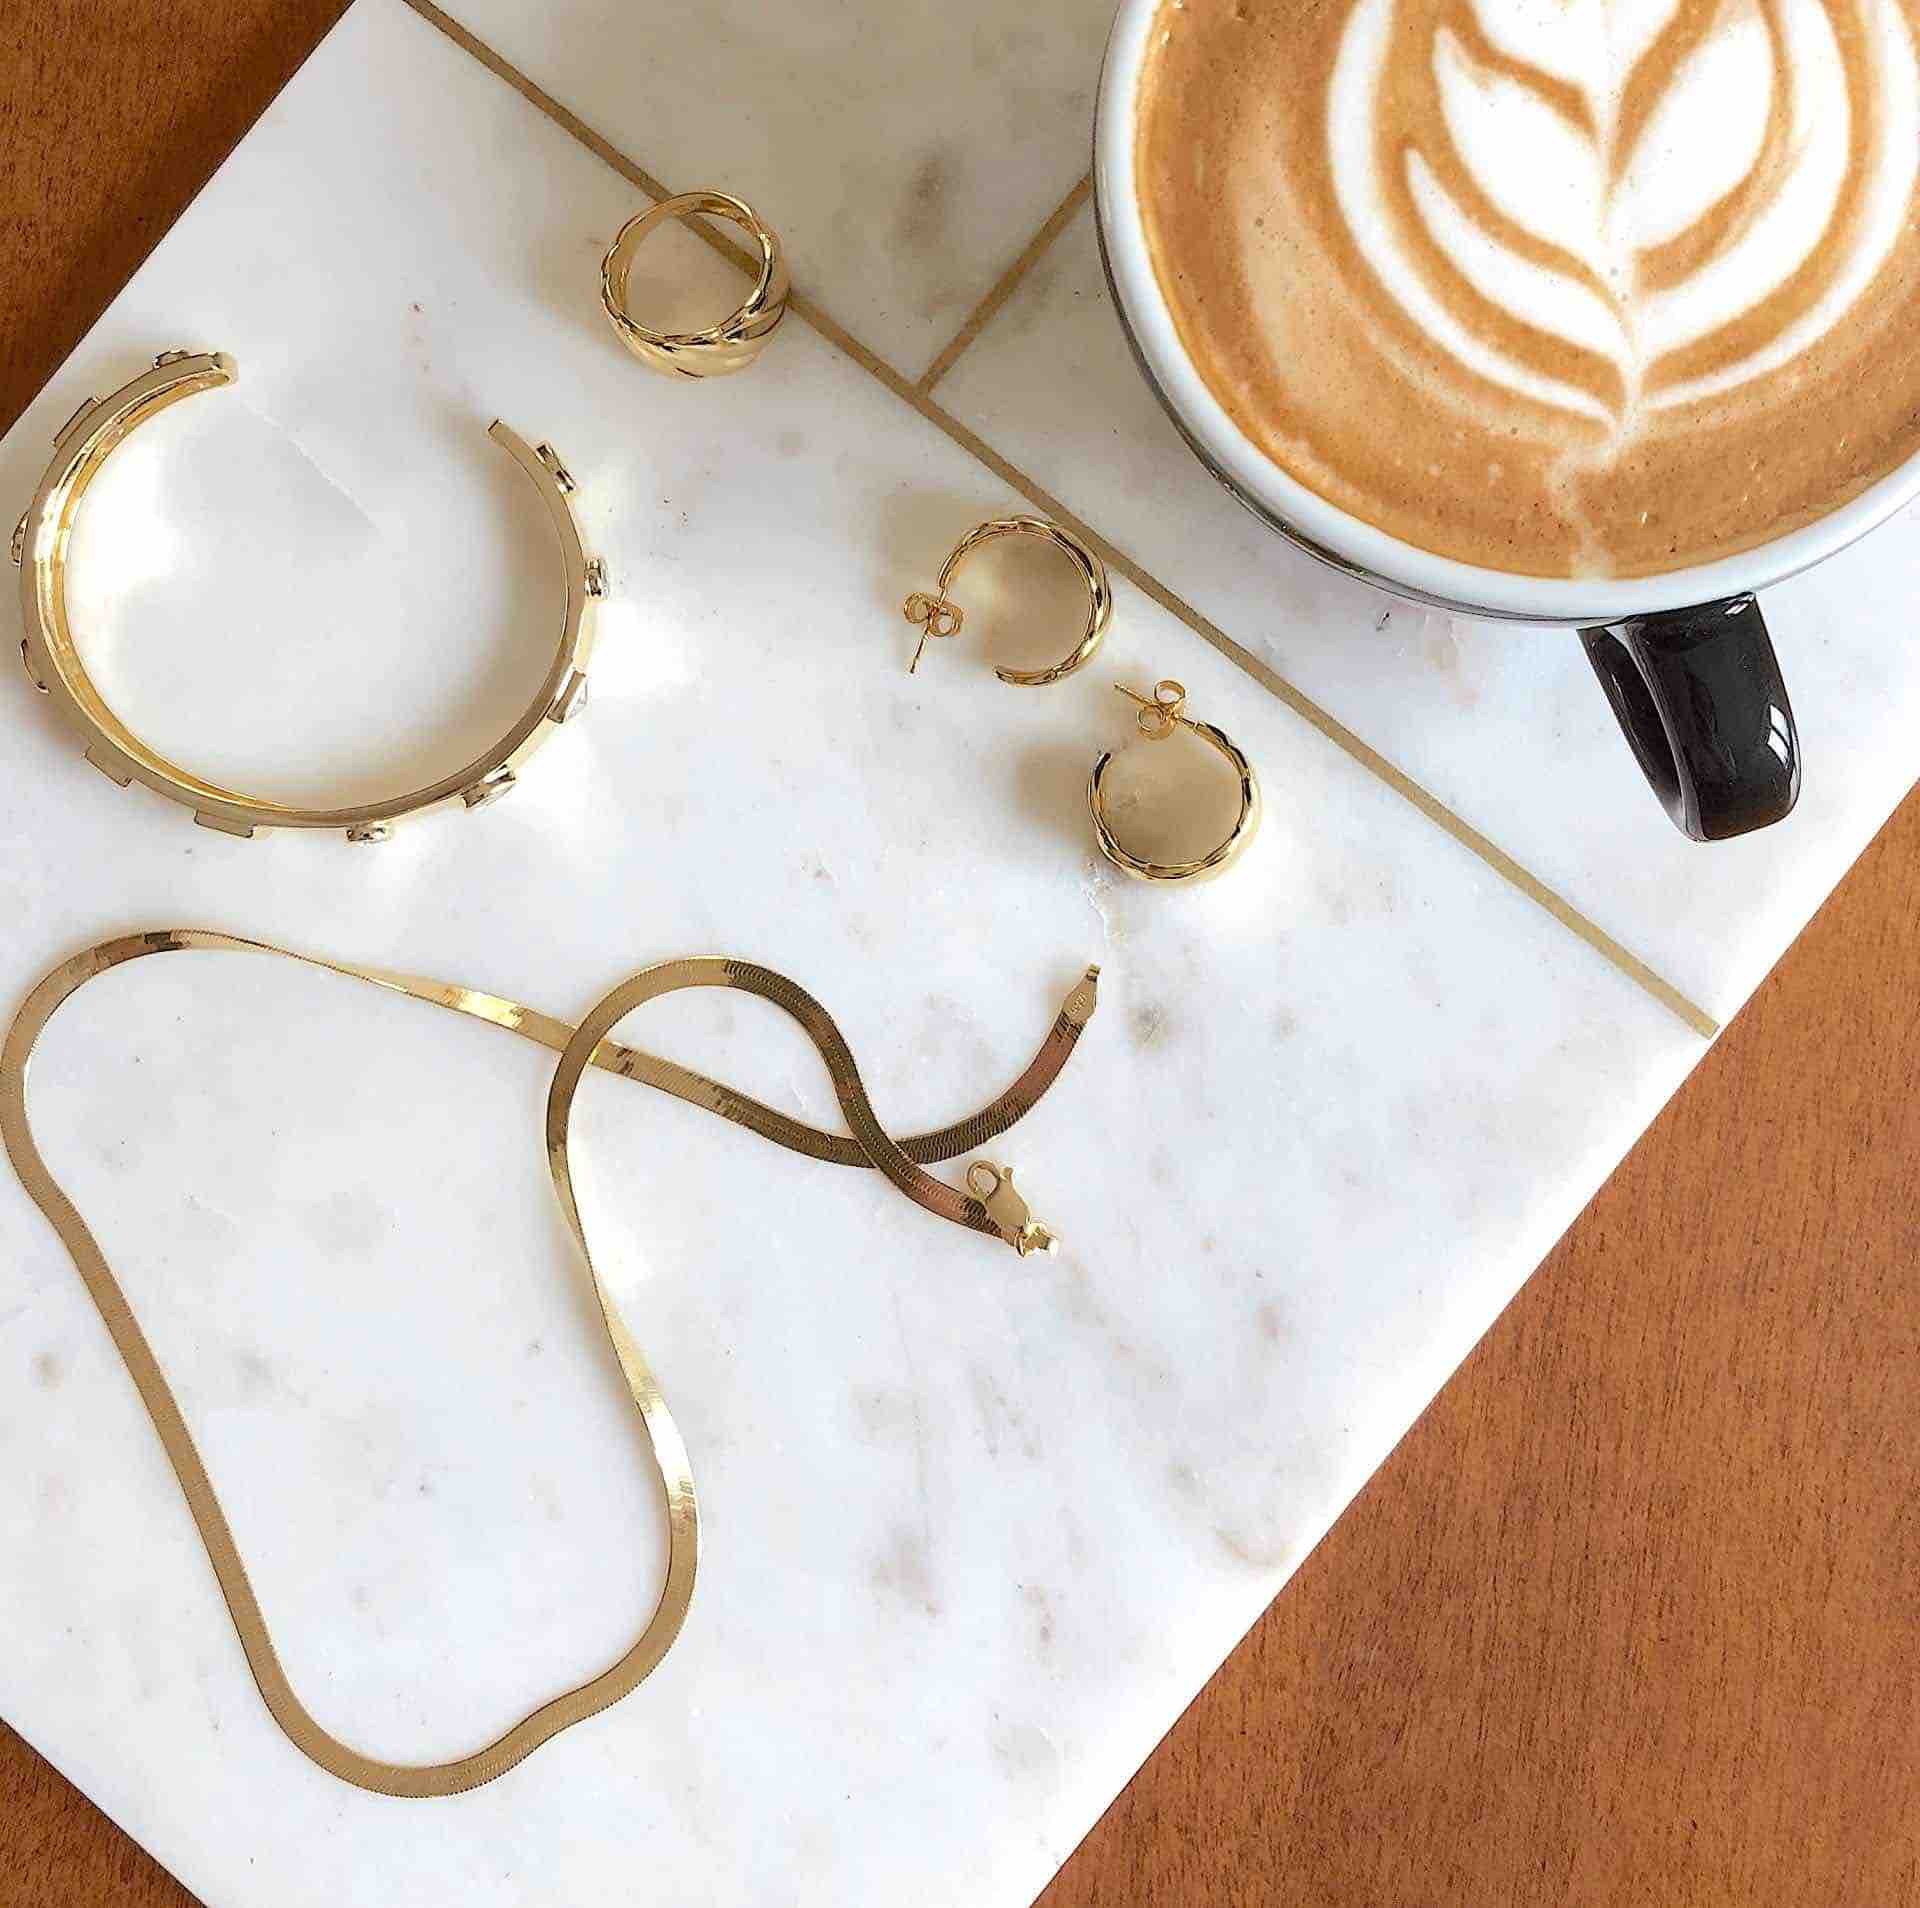 Silber Vergoldete Herringbone Halskette von CANDY mit anderem CANDY Schmuck und einer Tasse Kaffee auf weisser Marmorplatte